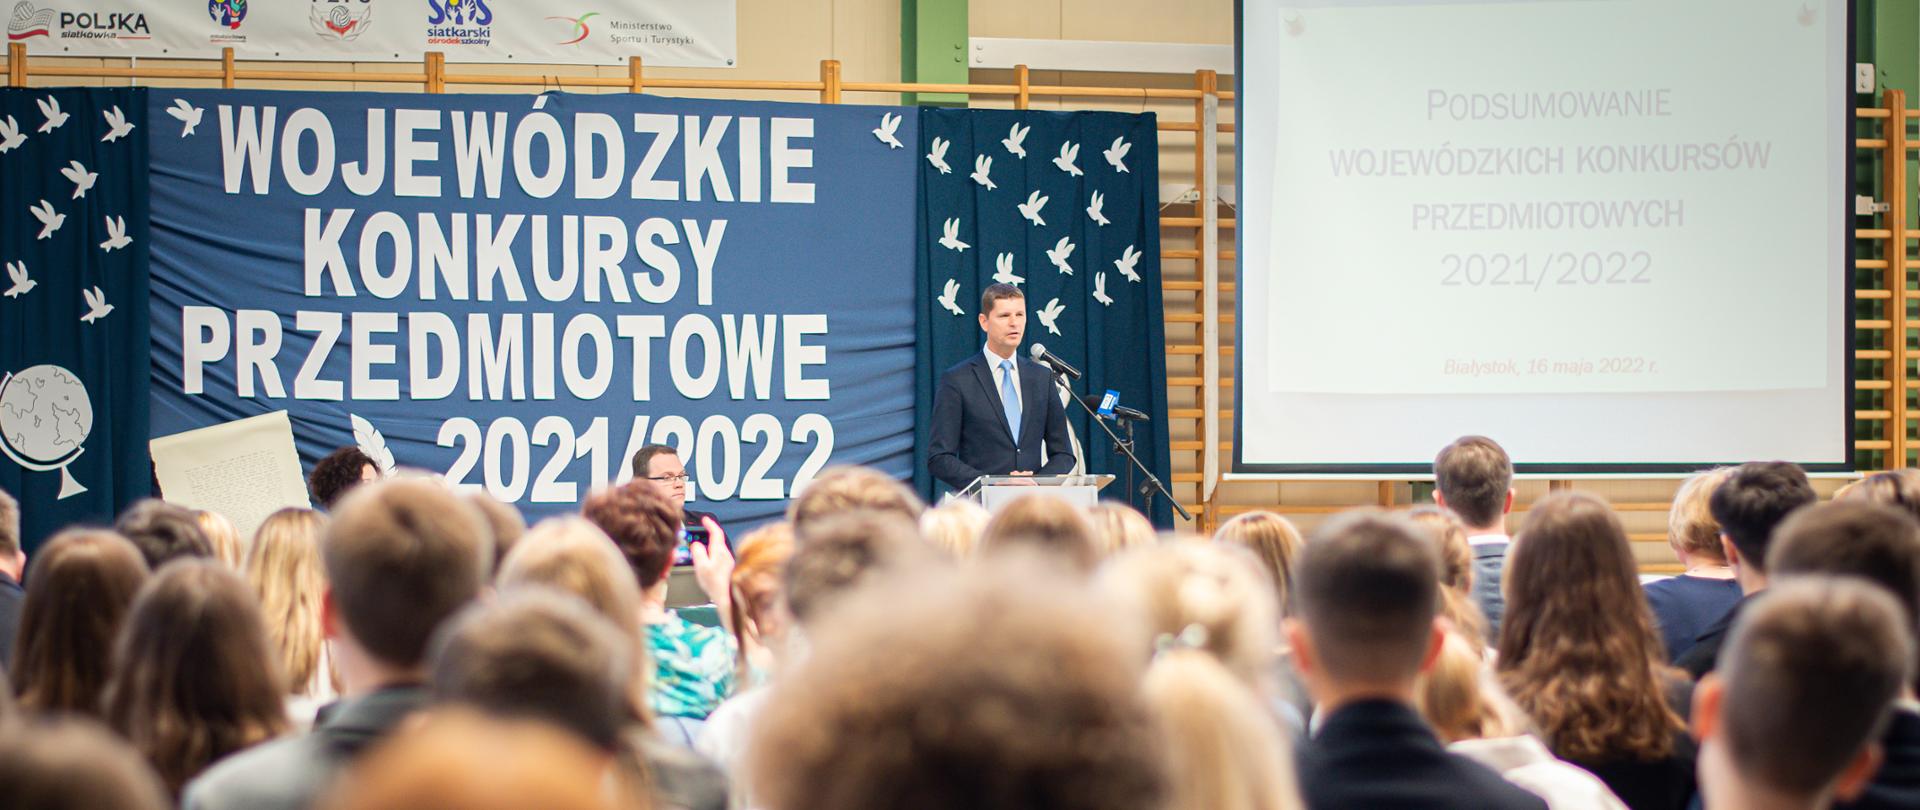 zdjęcie przedstawia przemawiającego wiceministra Piontkowskiego do laureatów konkursu w szkole w Białymstoku